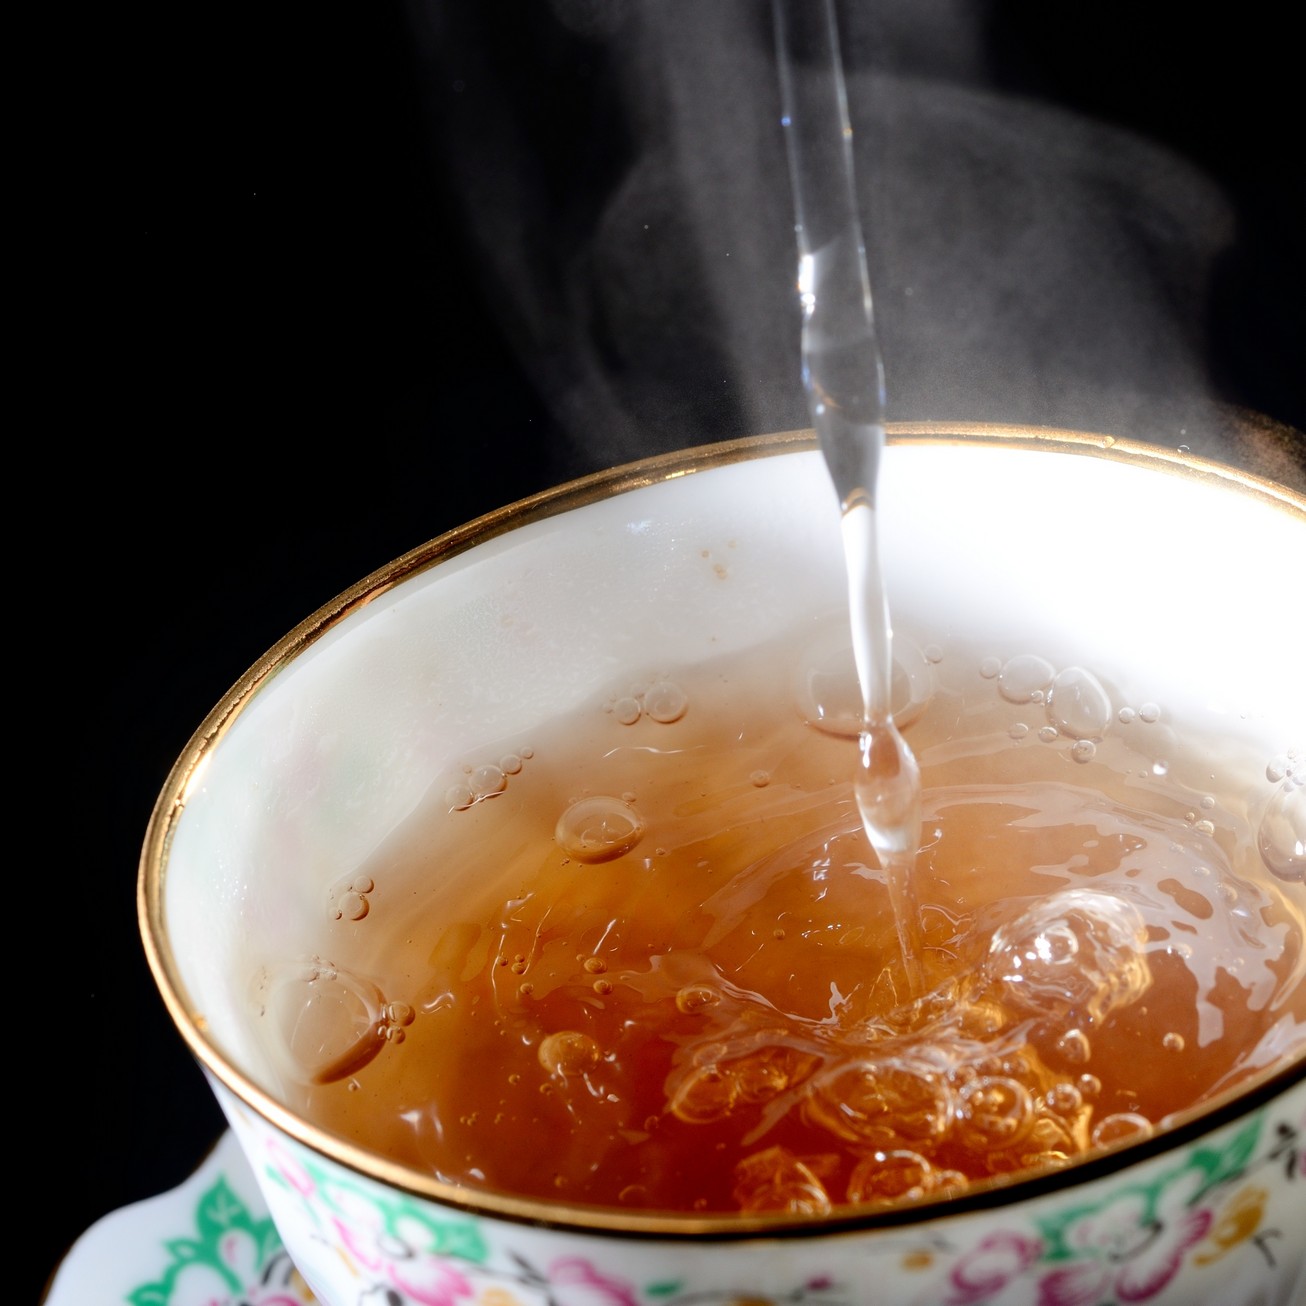 San Francisco Bay Area Break Room Services | Healthy Tea | Hot Beverages